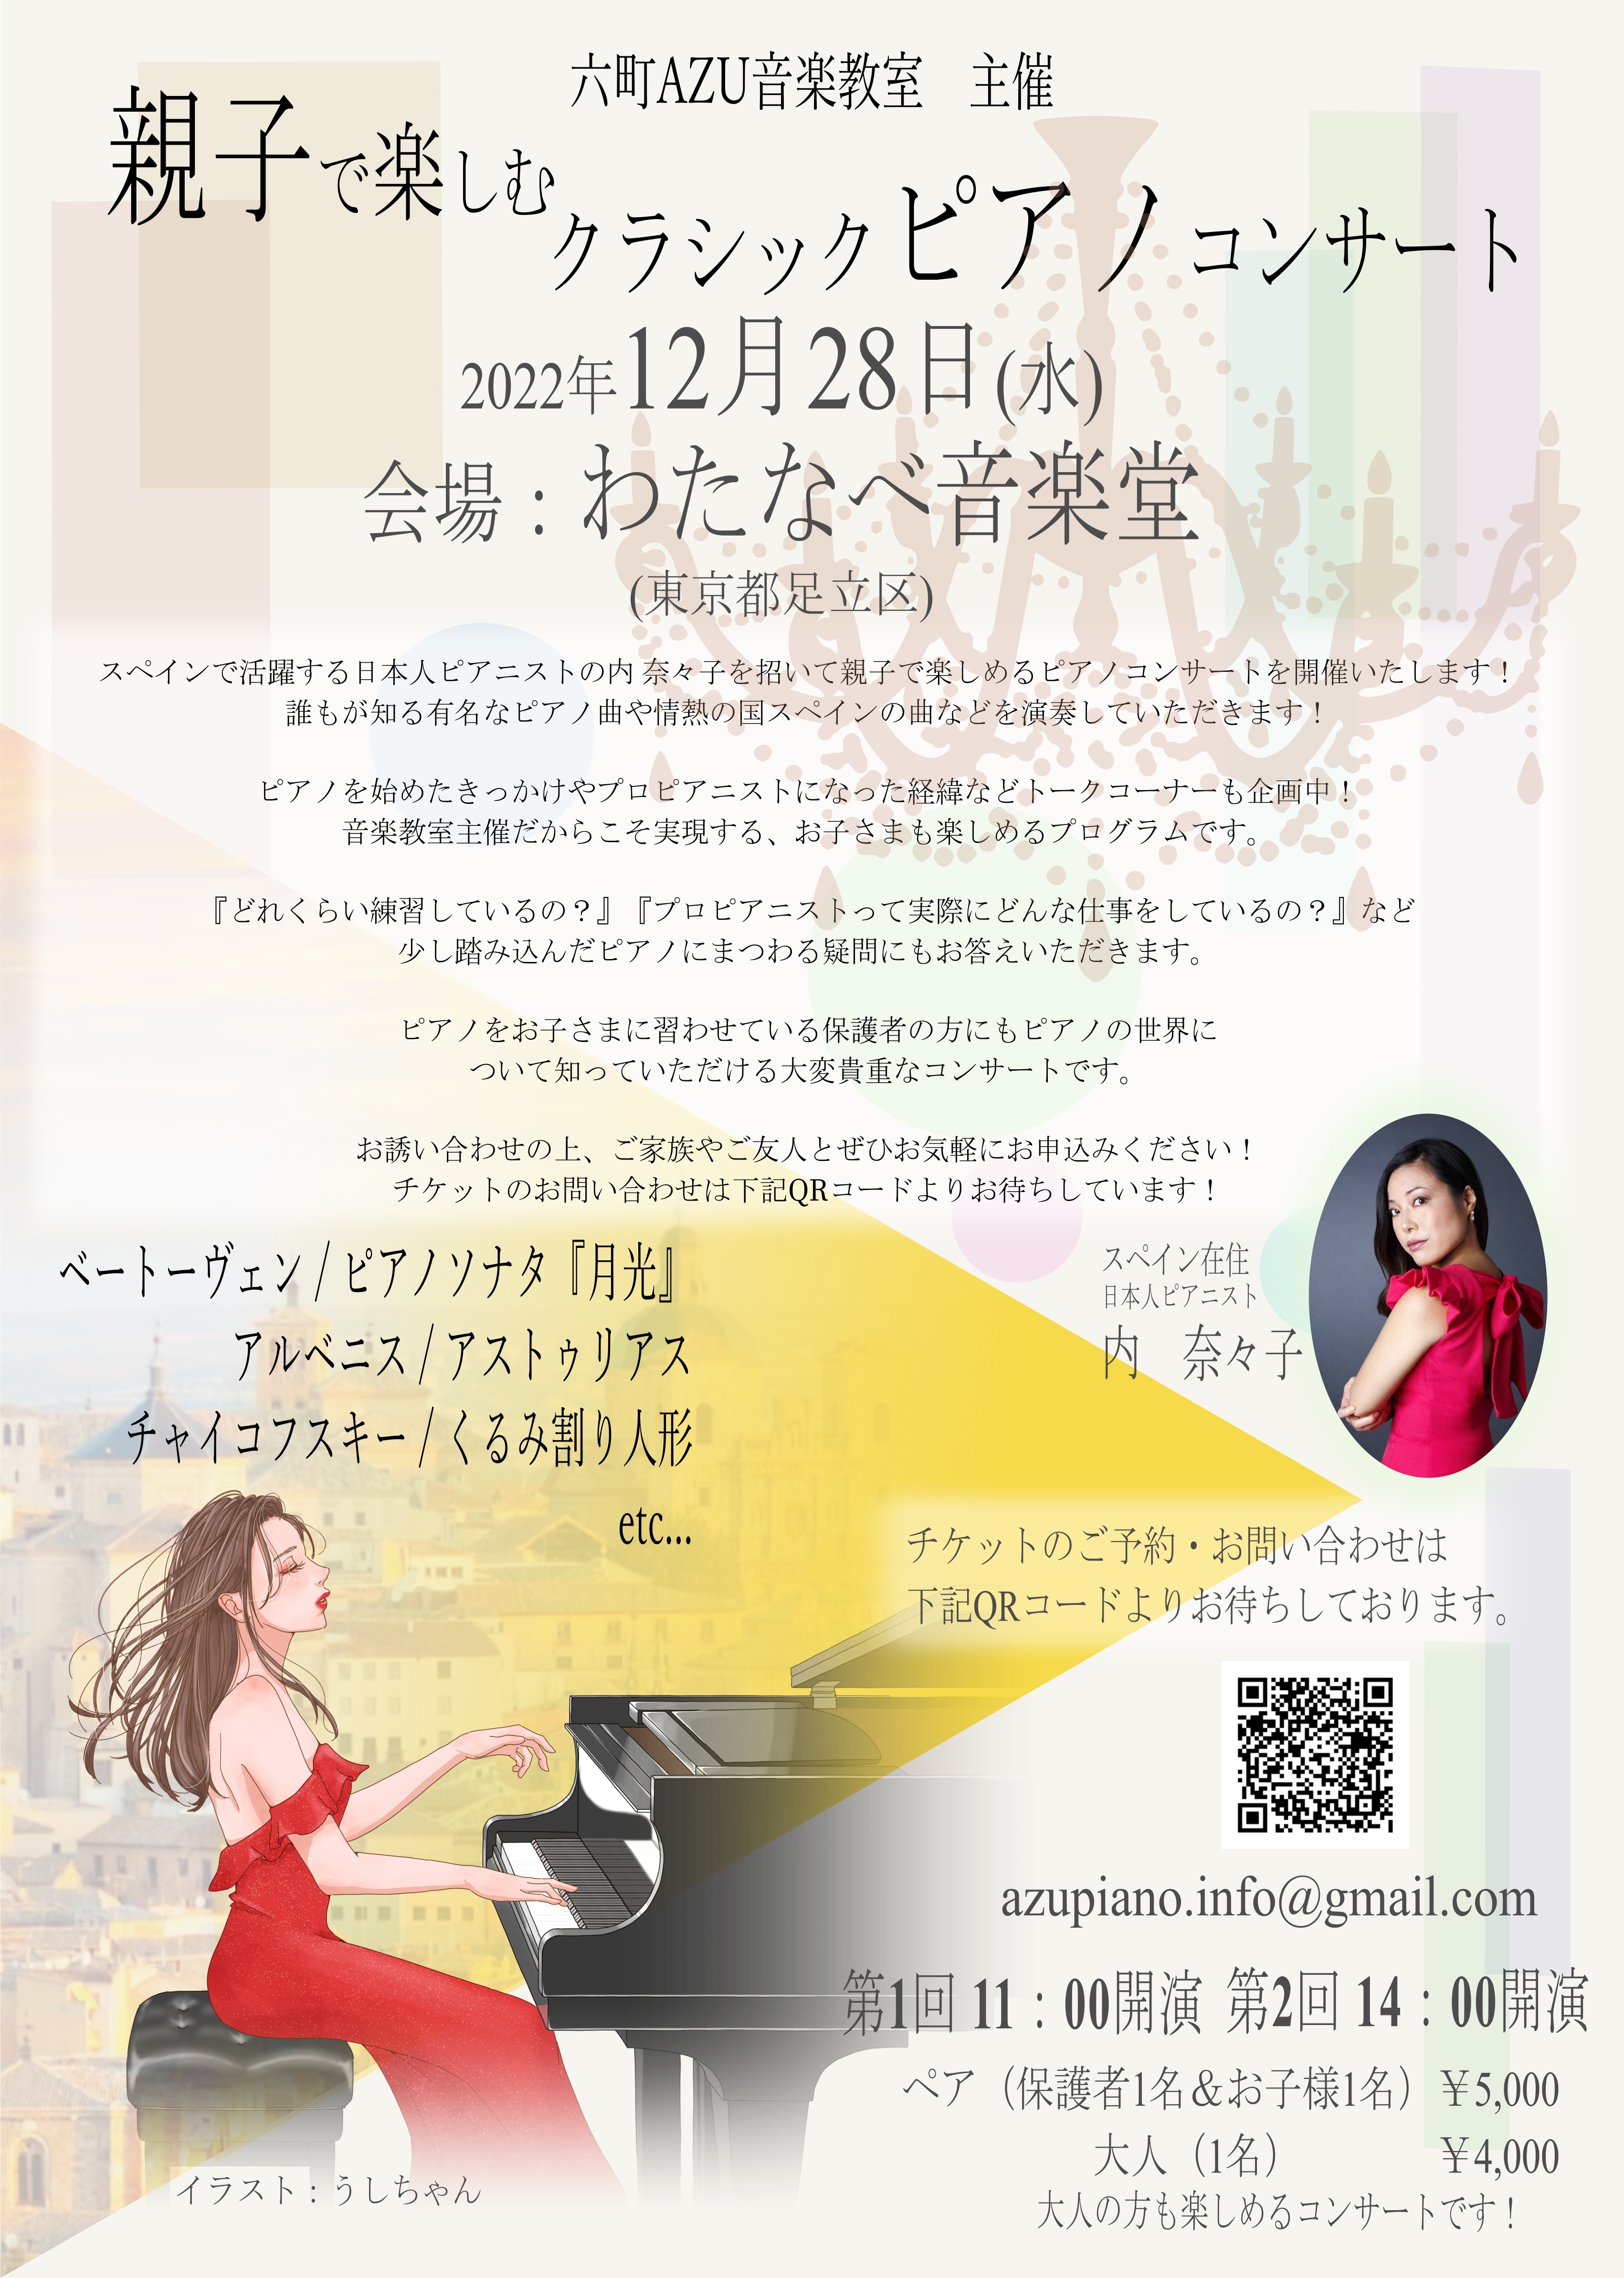 「親子で楽しむクラシックピアノコンサート」を
12月28日足立区わたなべ音楽堂にて開催！
～スペインで活躍する日本人ピアニストが登場～